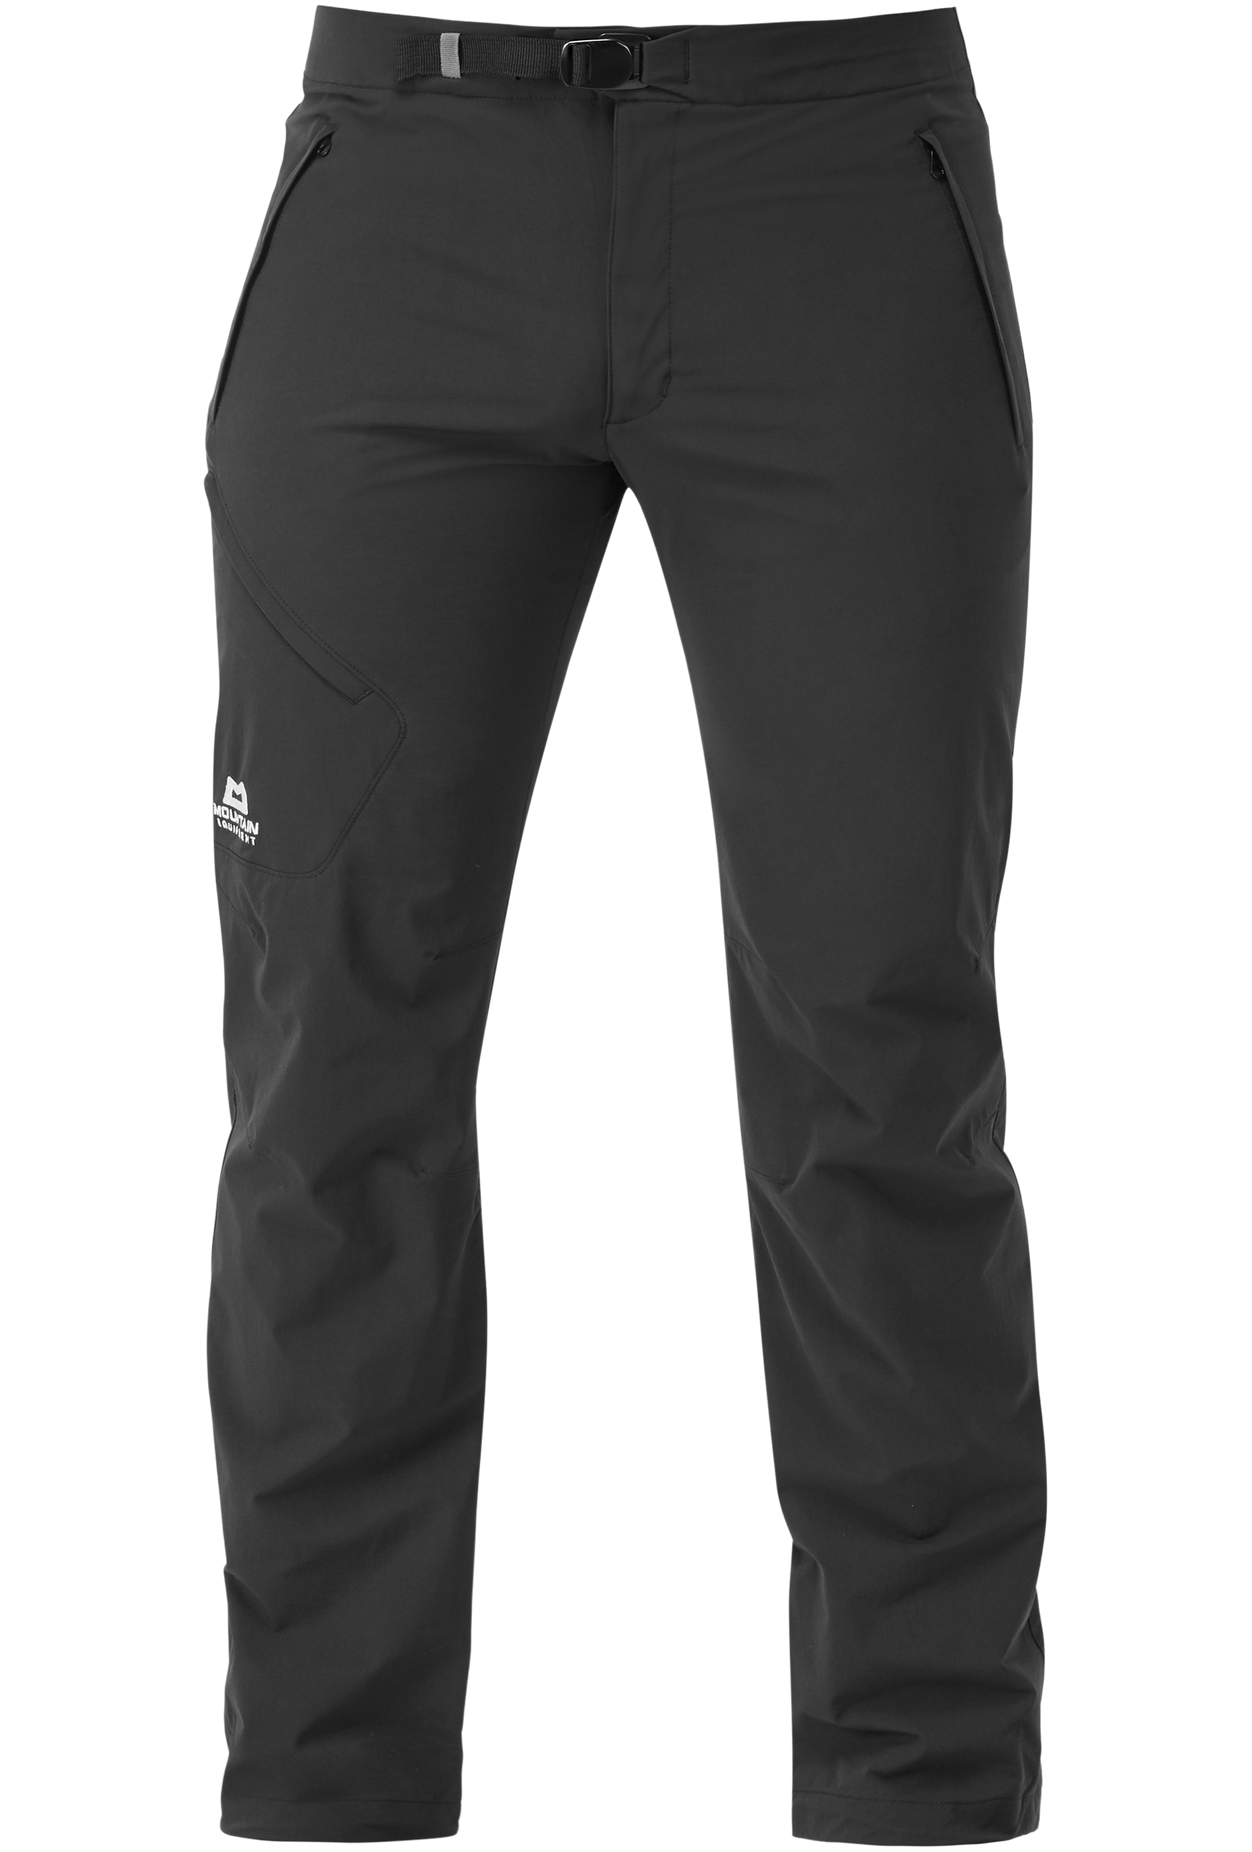 Mountain Equipment pánské softshellové kalhoty Comici Pant - prodloužené Barva: black/black, Velikost: 30/S